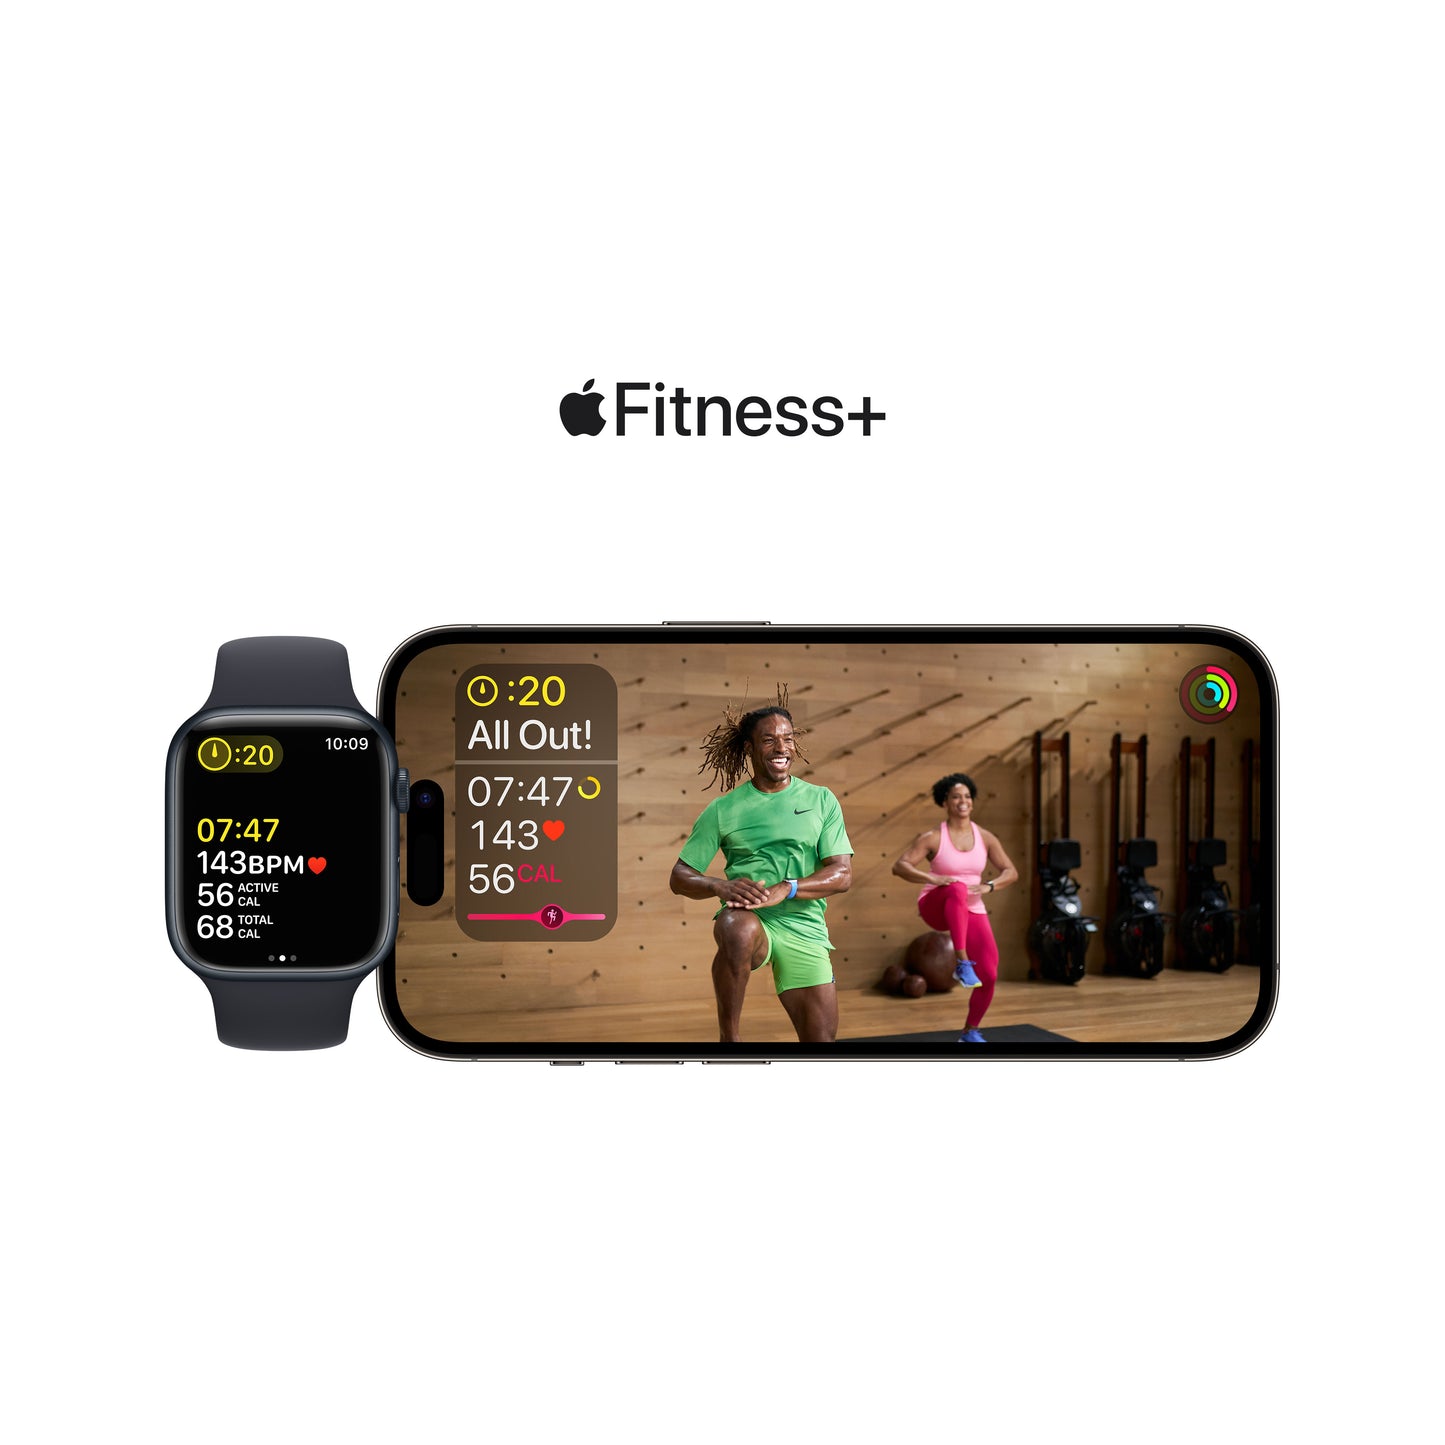 Apple Watch Series 8 revisa tus tendencias en la app Fitness del iPhone en www.mac-center.com